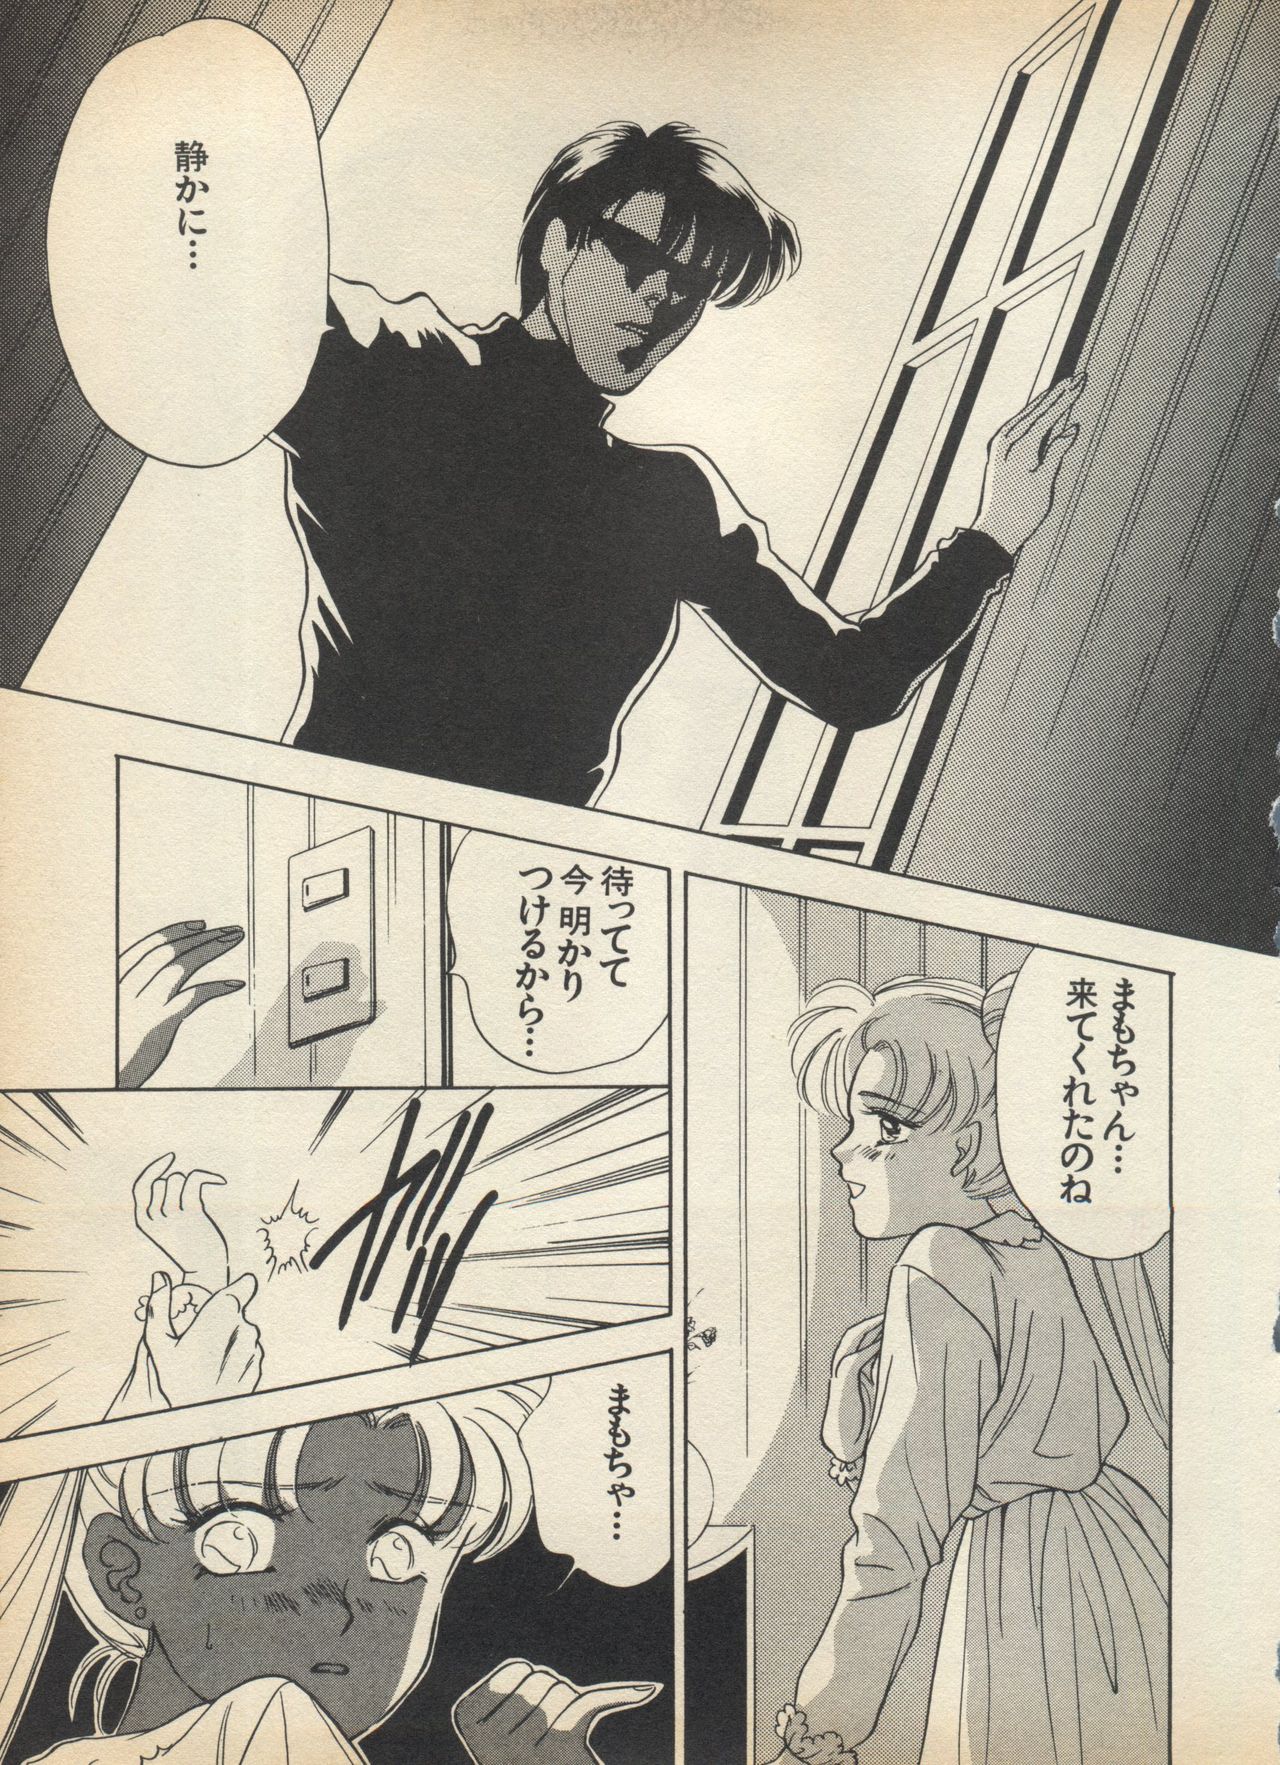 [Anthology] Lunatic Party 5 (Bishoujo Senshi Sailor Moon) page 44 full